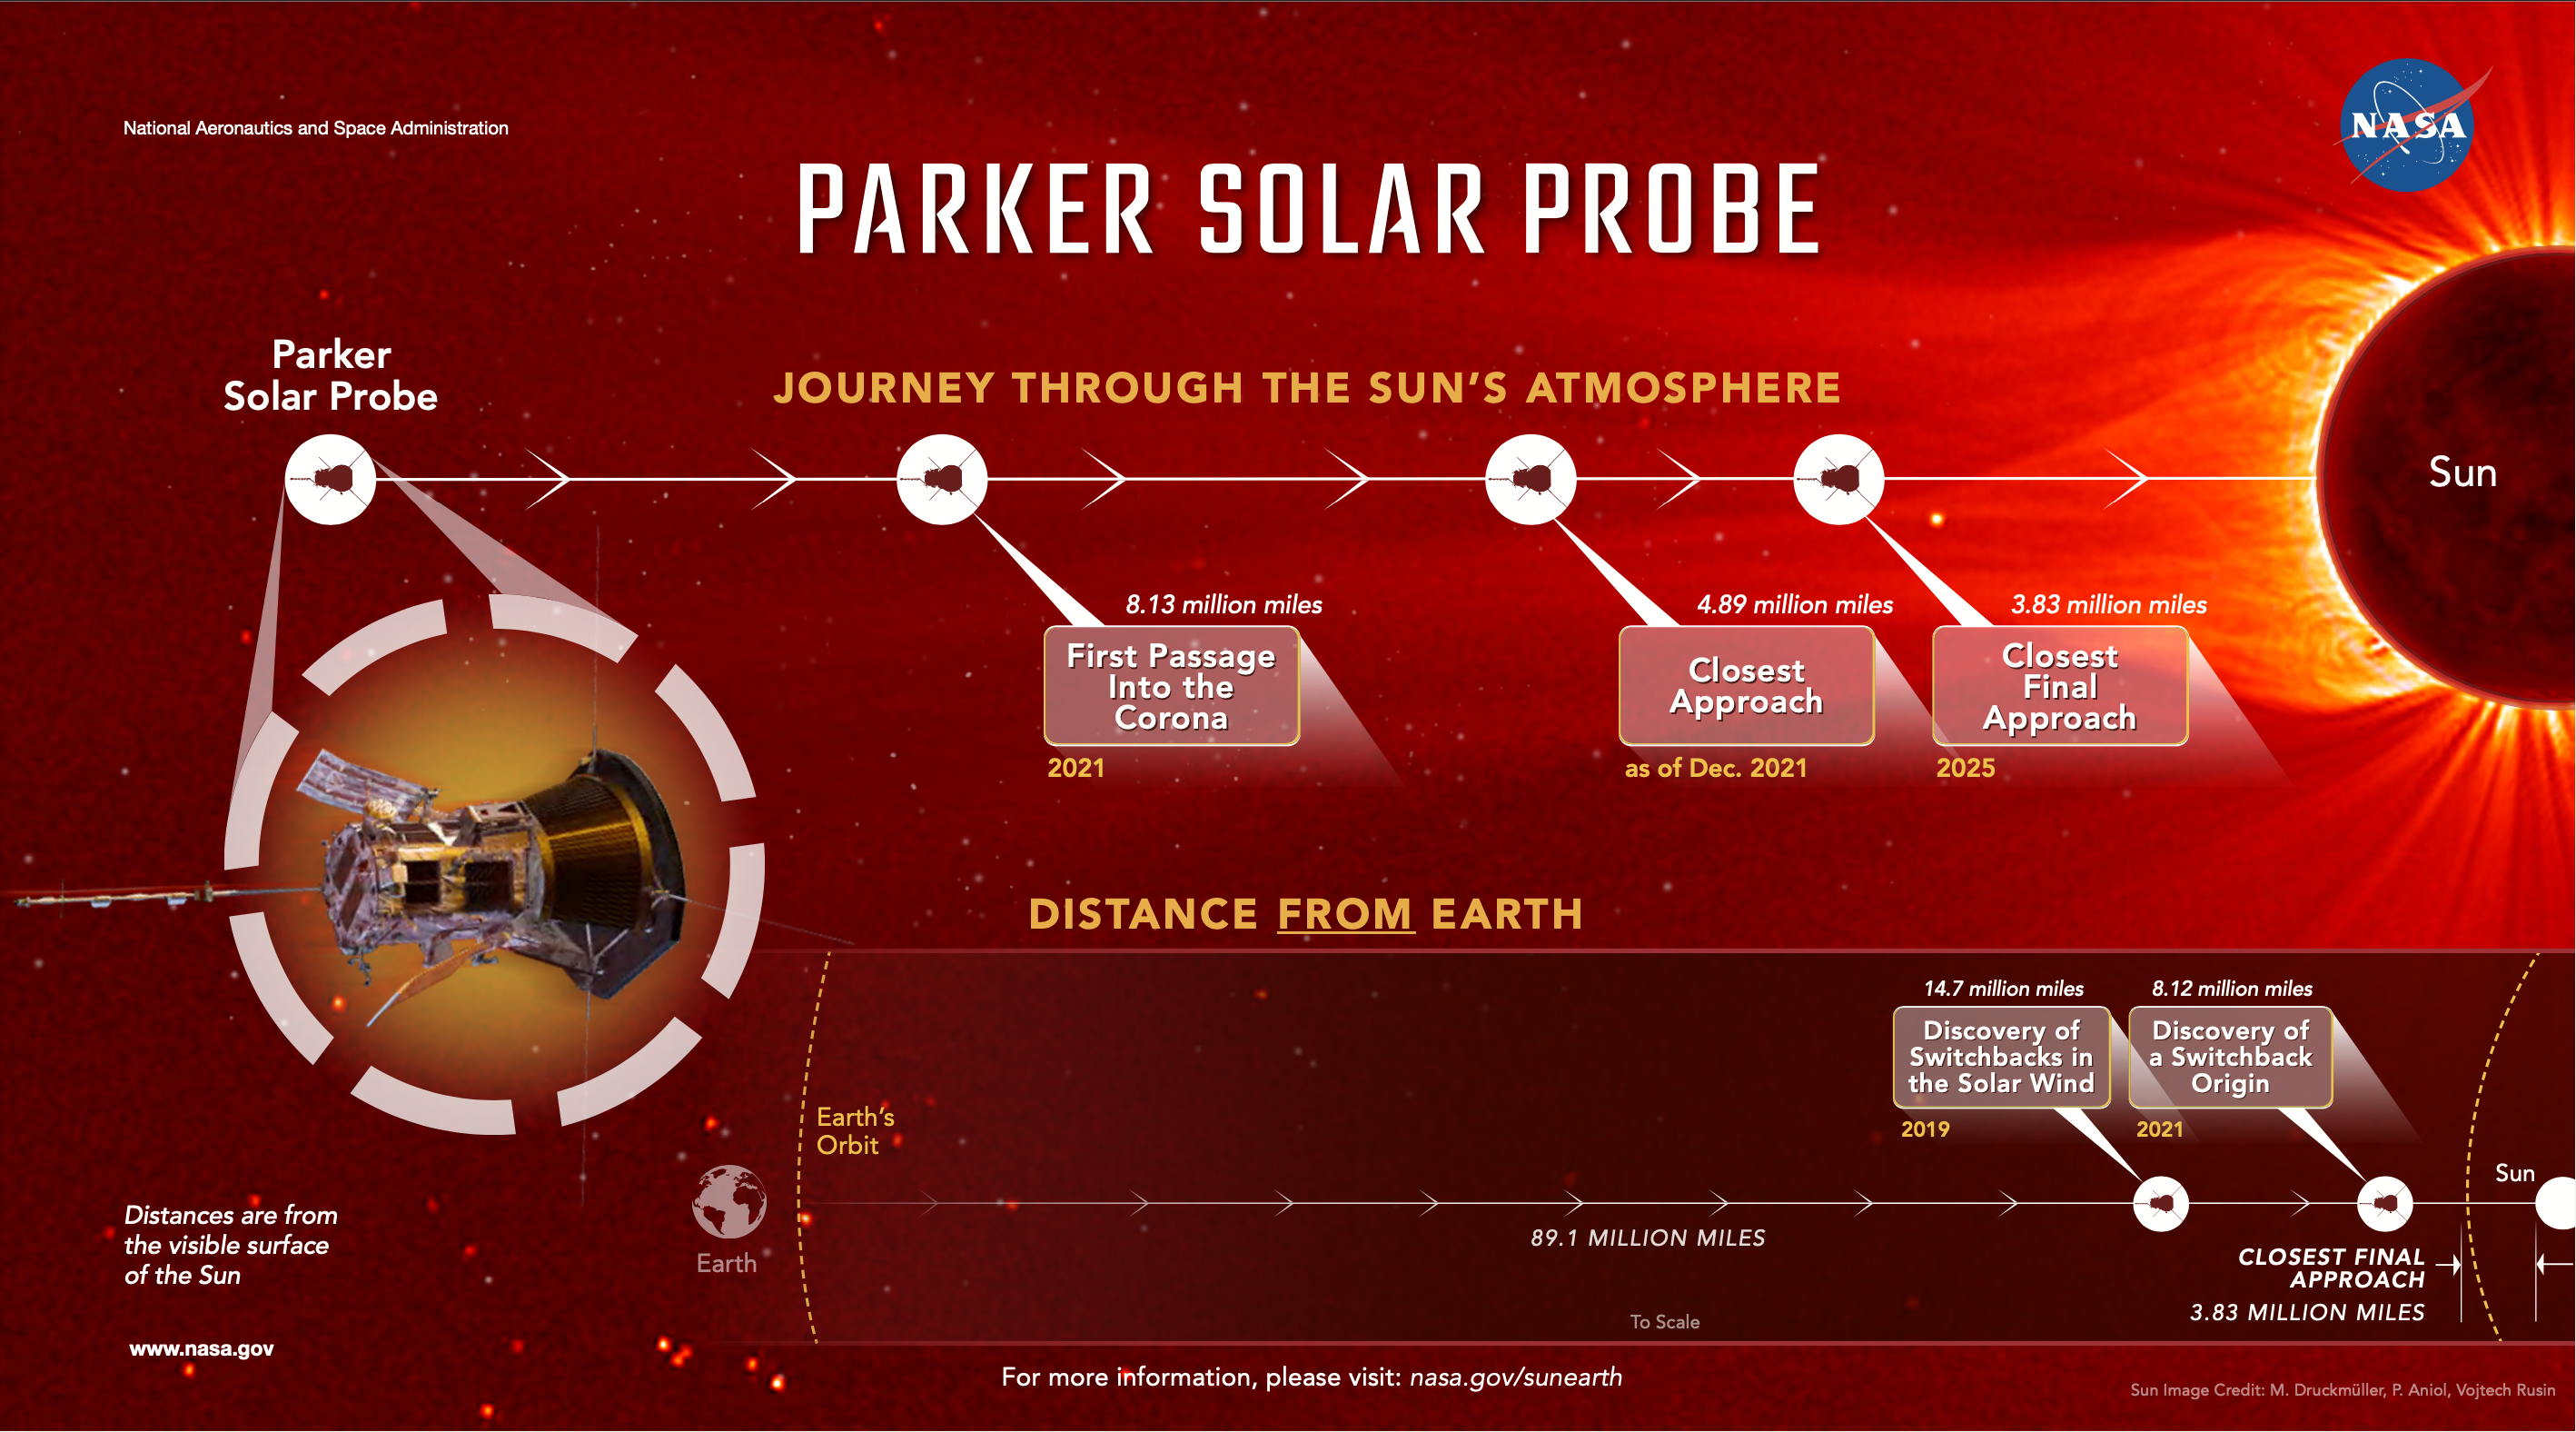 Некоторые из основных вех и достижений Parker Solar Probe на пути к Солнцу. Предоставлено: Центр космических полетов имени Годдарда НАСА / Мэри П. Грибик-Кейт.